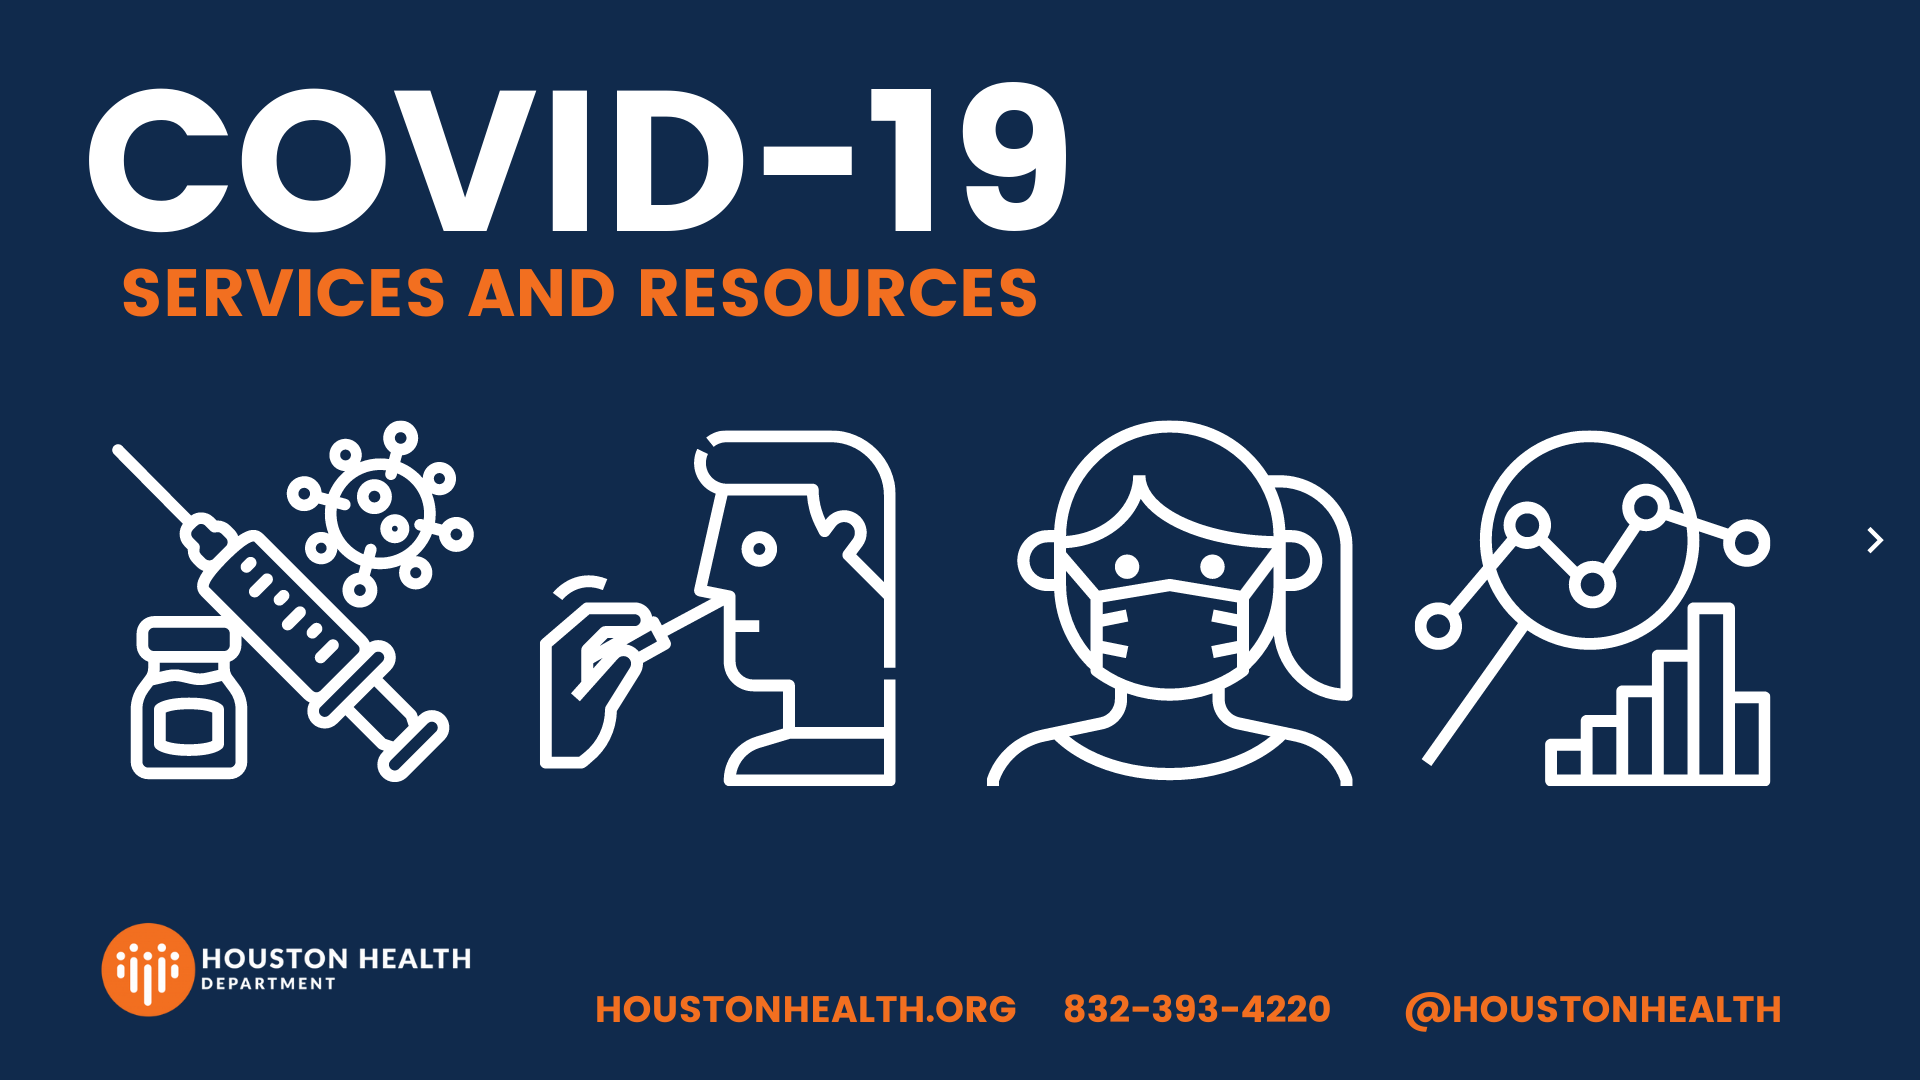 Iconos que muestran tablas de vacunación, pruebas, enmascaramiento y datos. El encabezado dice "Servicios y recursos de Covid-19". El logotipo del Departamento de Salud de Houston se encuentra en la parte inferior izquierda.